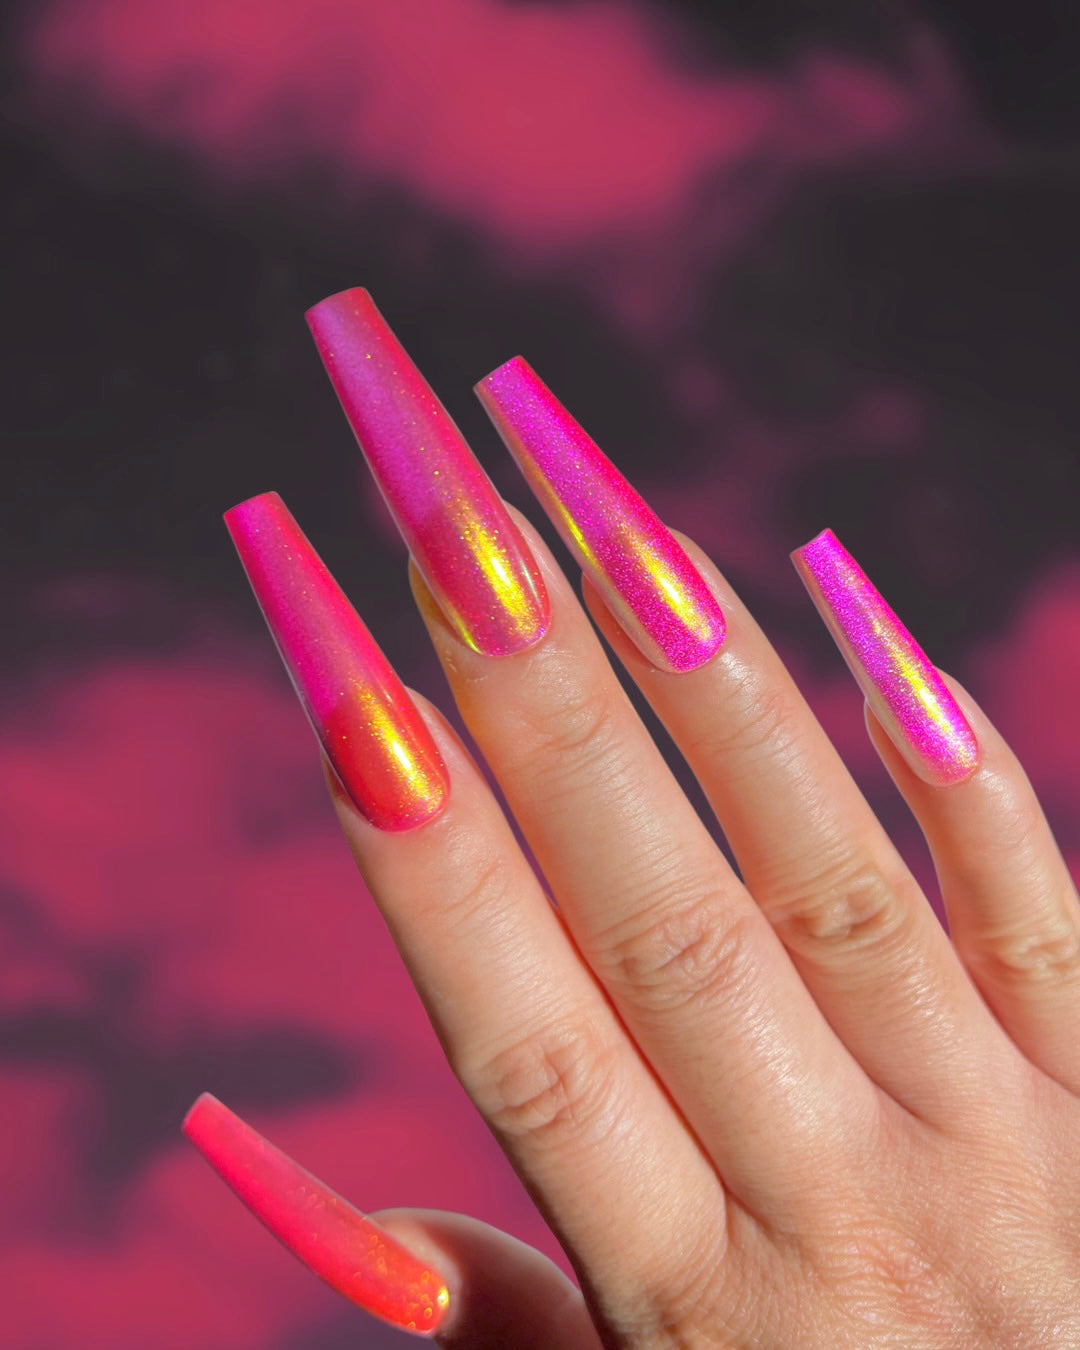 CALLIE Reusable Press on Nails Neon Pink and Green Abstract Nails - Etsy |  Summer nails, Nail designs, Neon nails